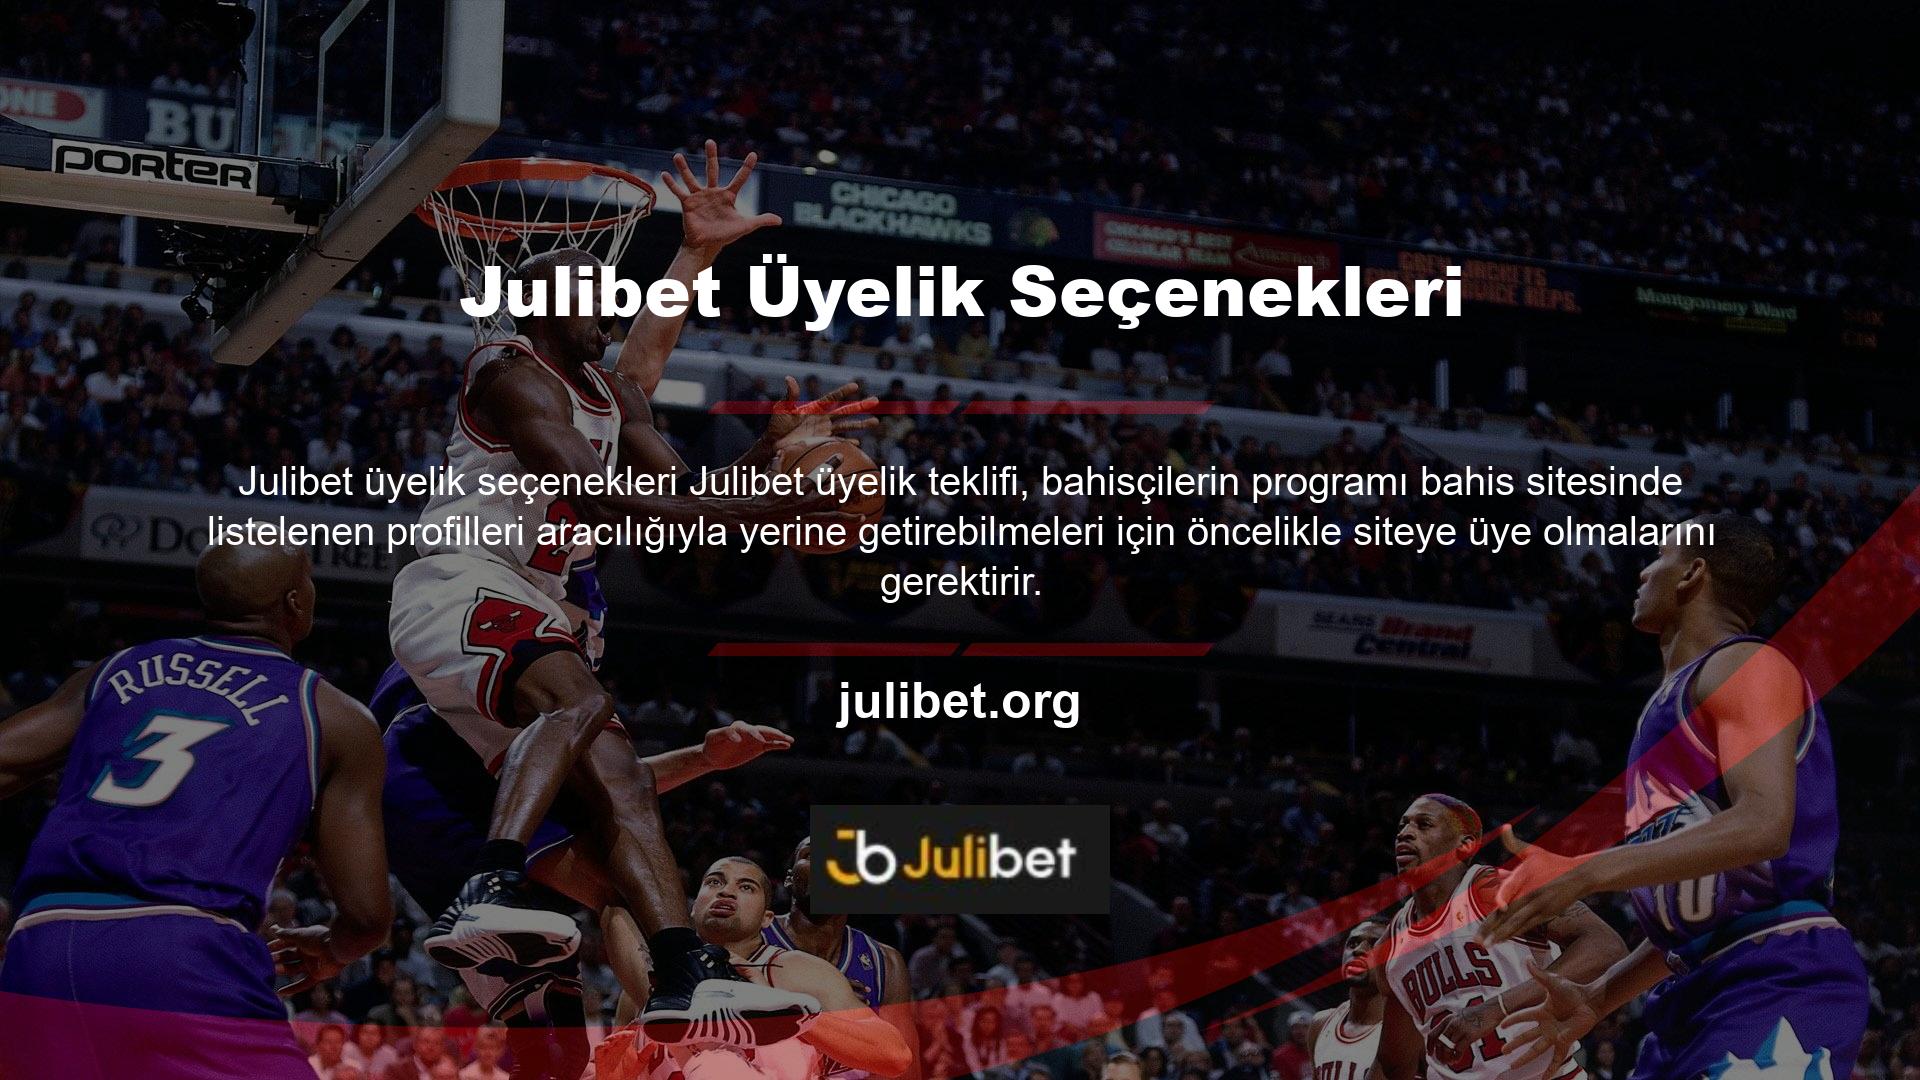 Oyun tutkunlarının bu siteye üye olabilmeleri için Julibet üyelik seçenekleri üyelik işlemlerini tamamlamaları gerekmektedir